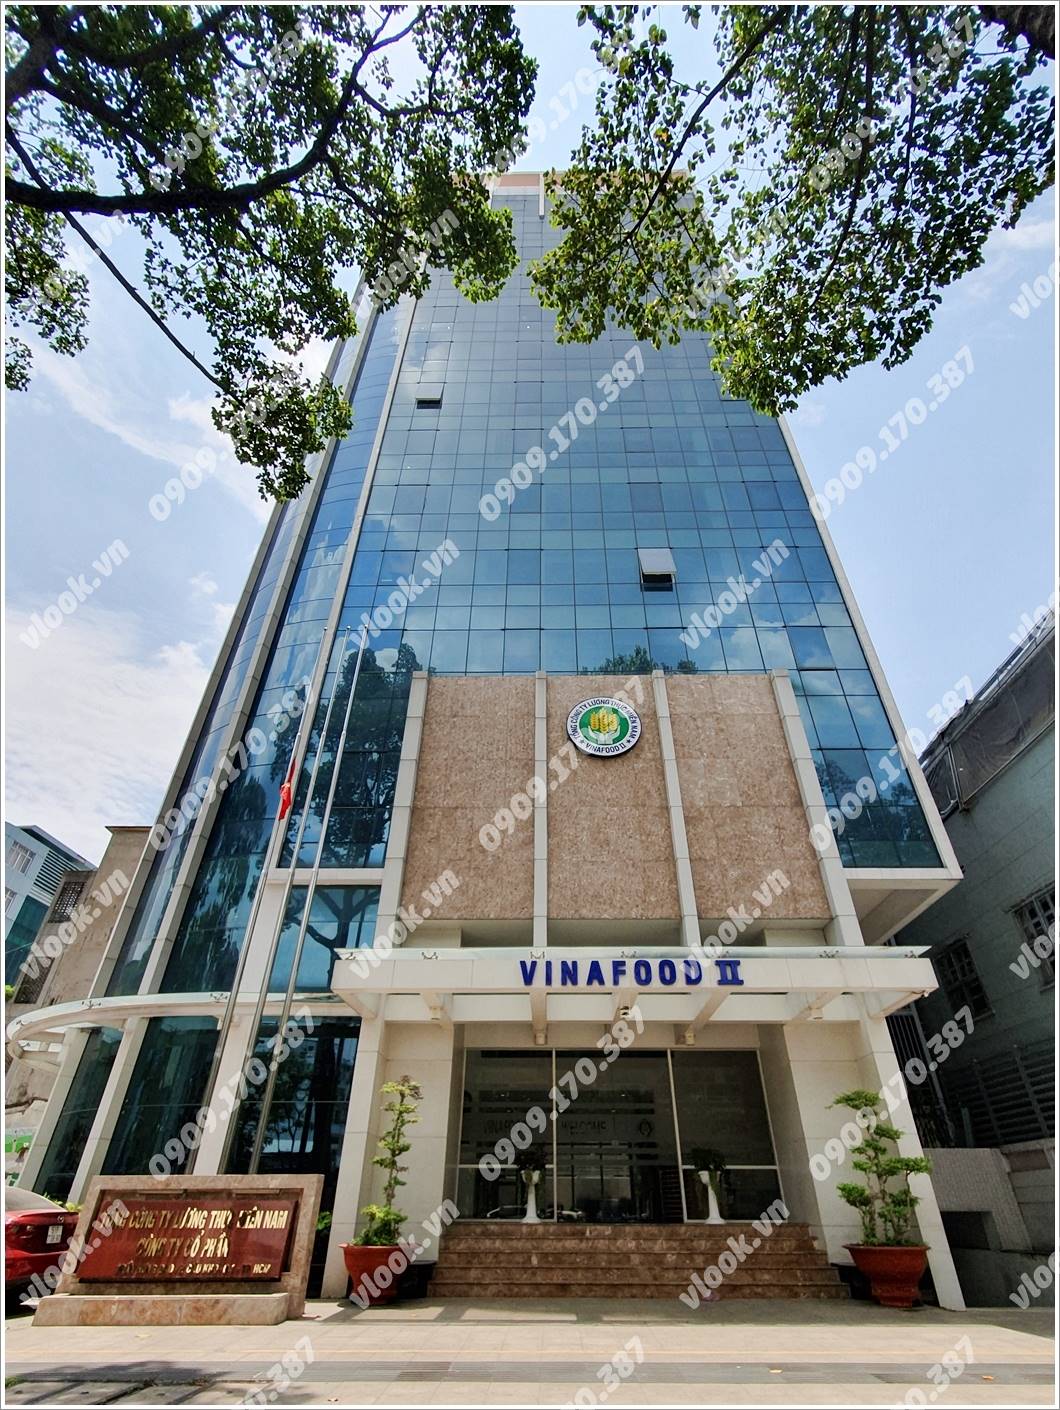 Mặt trước cao ốc cho thuê văn phòng Vinafood Tower, Trần Hưng Đạo, Quận 1, TPHCM - vlook.vn